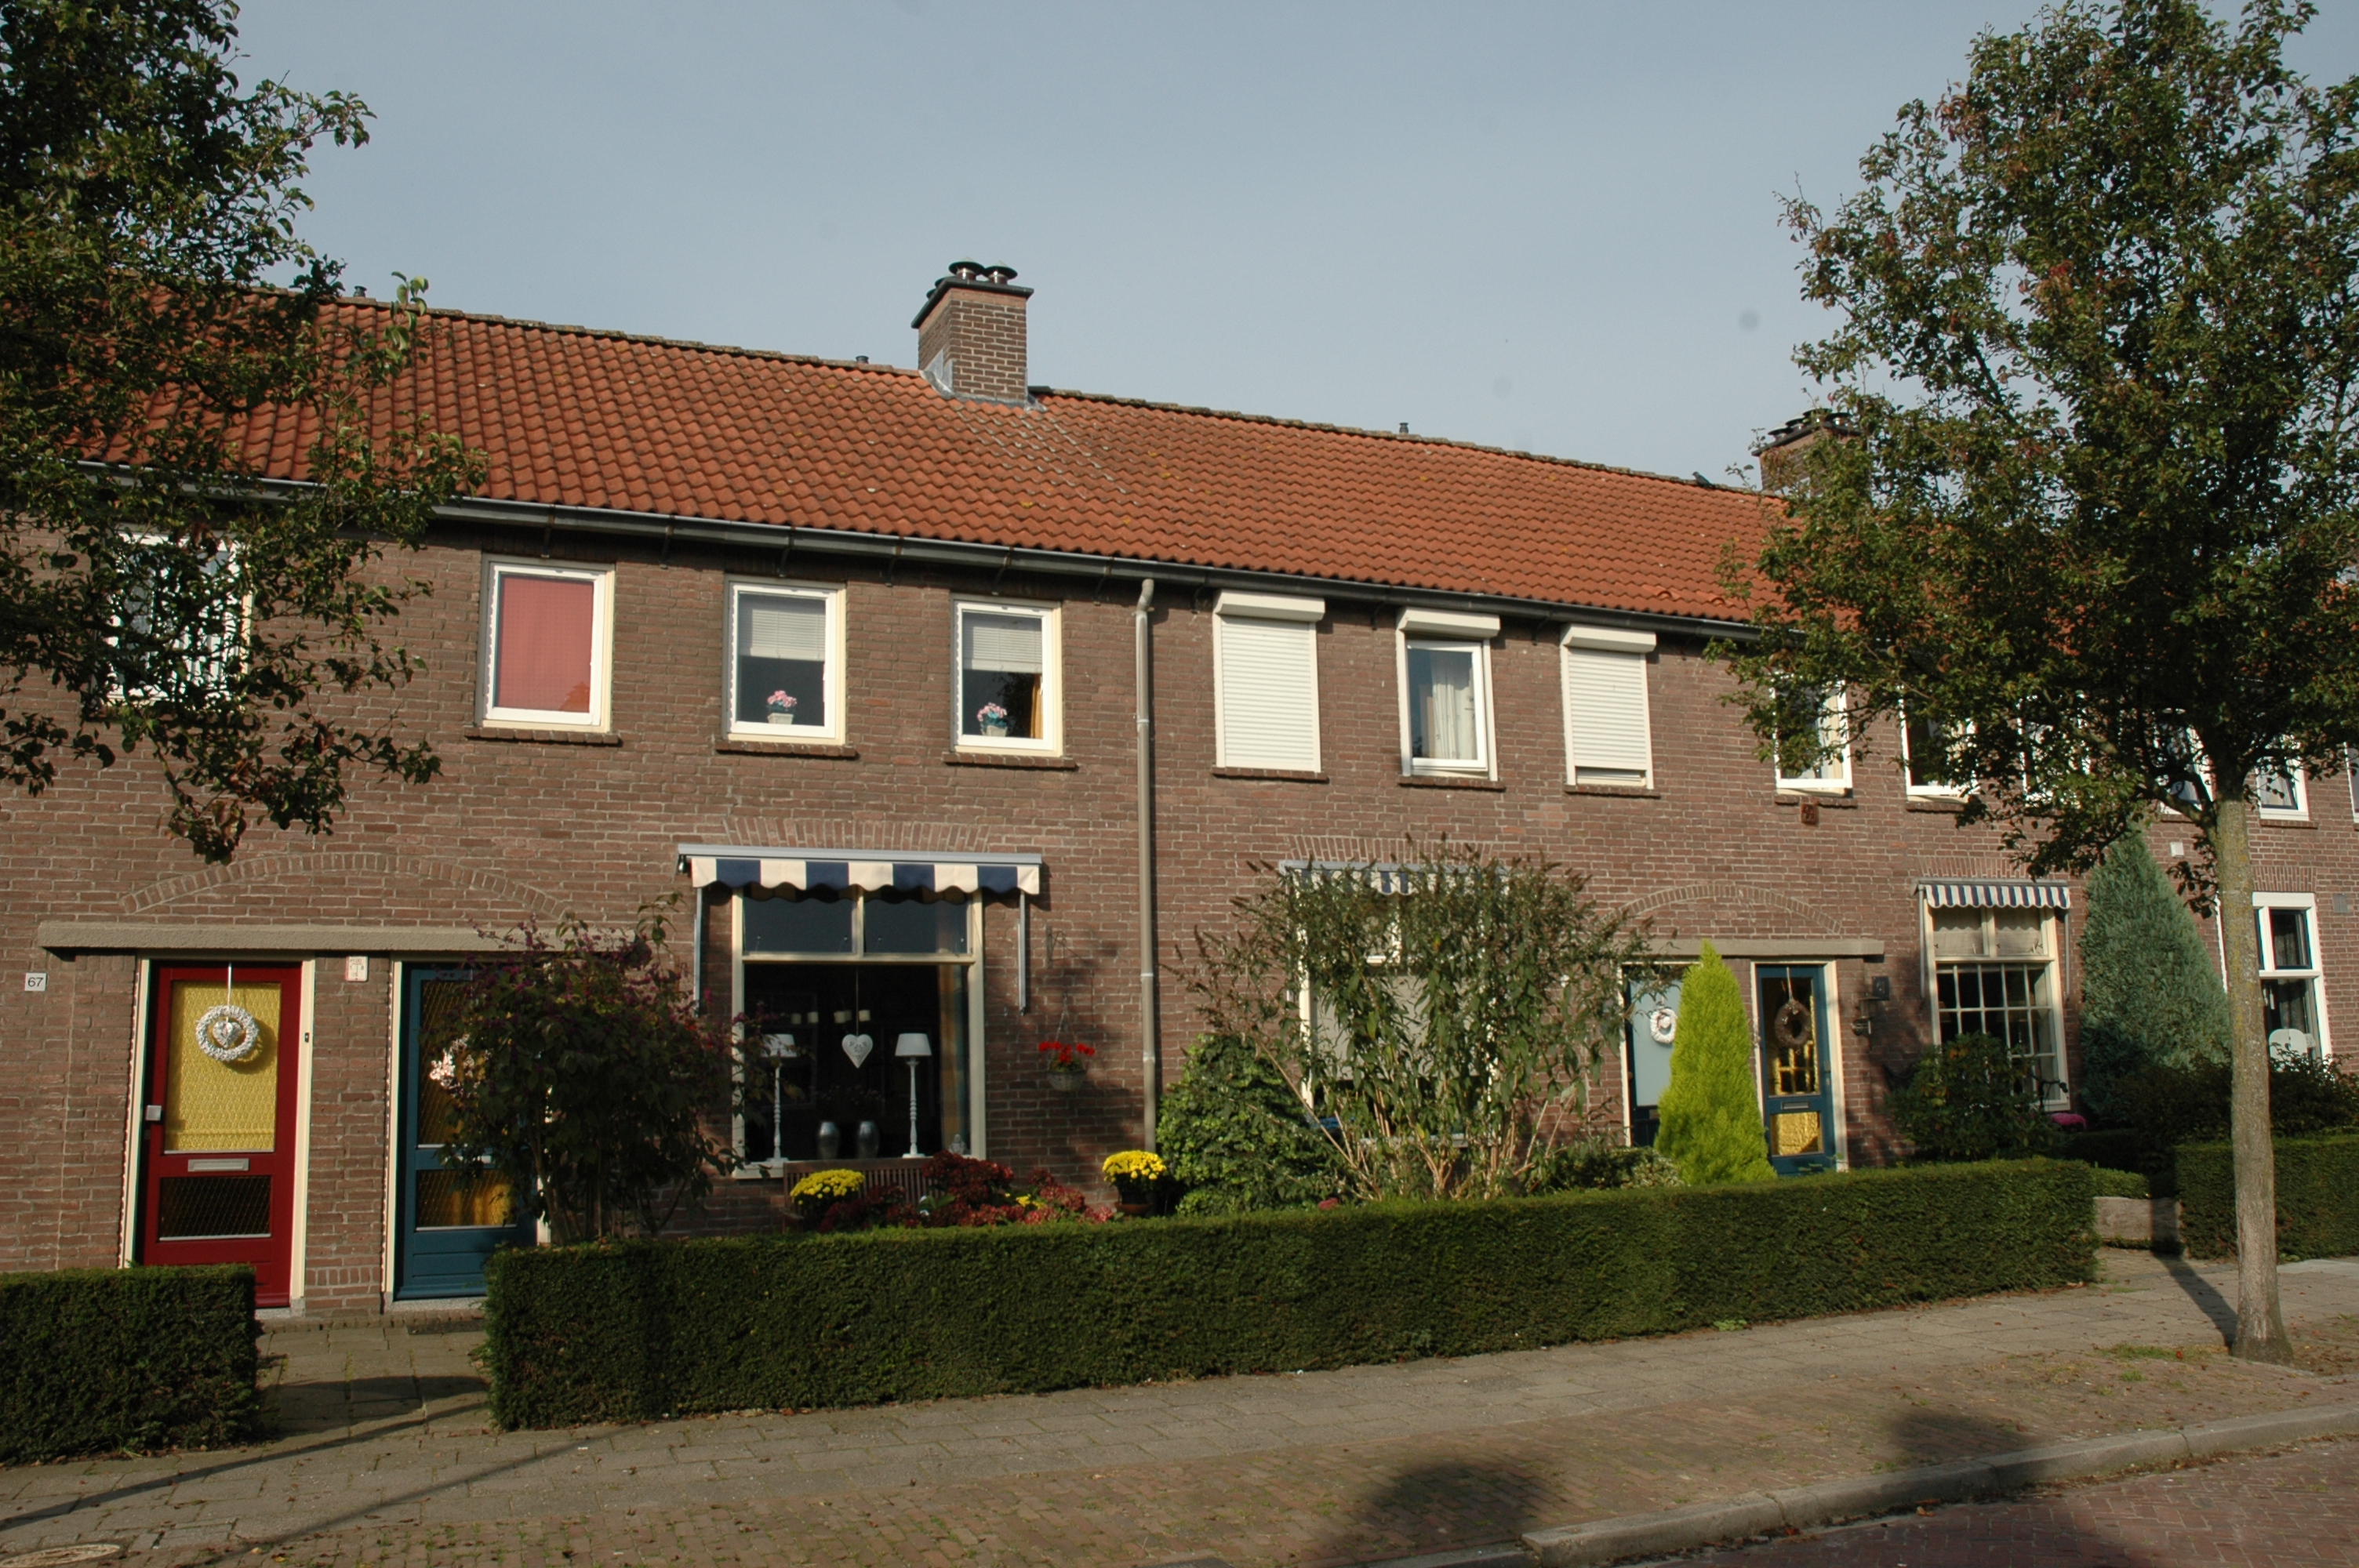 Jasmijnstraat 57, 7601 TR Almelo, Nederland